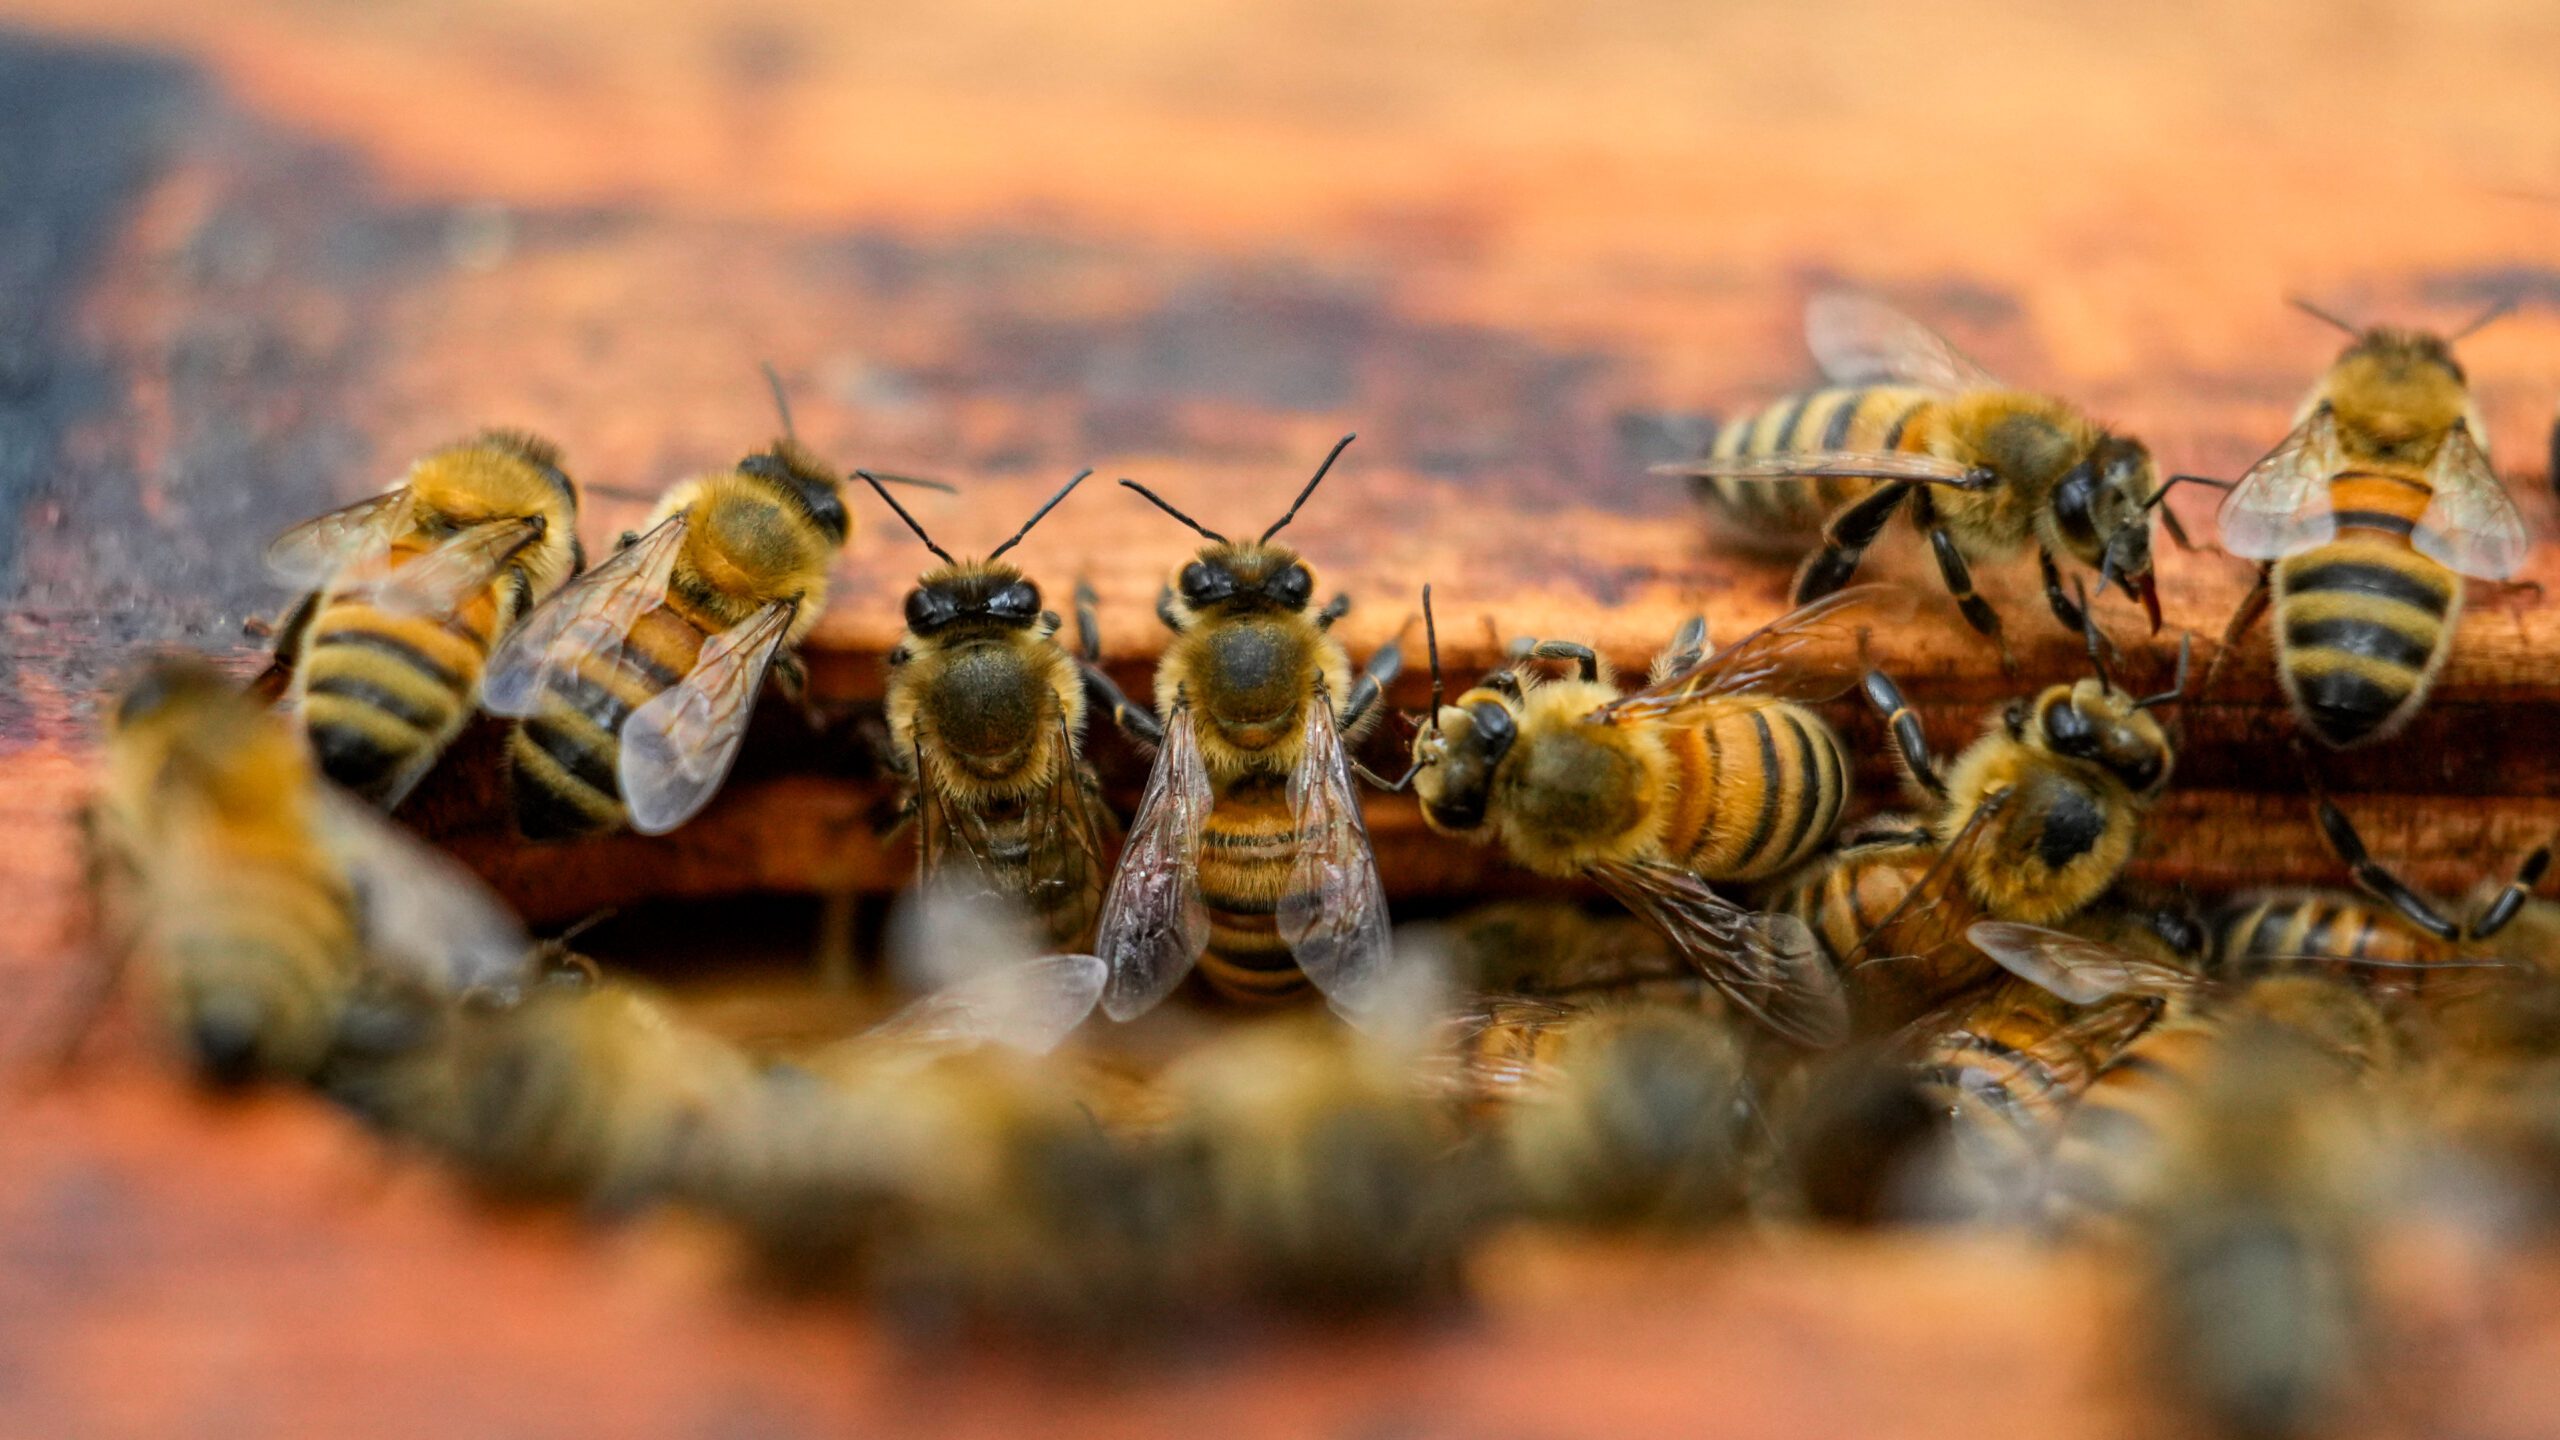 Nearly half of US honeybee colonies died last year - WNYT.com ...